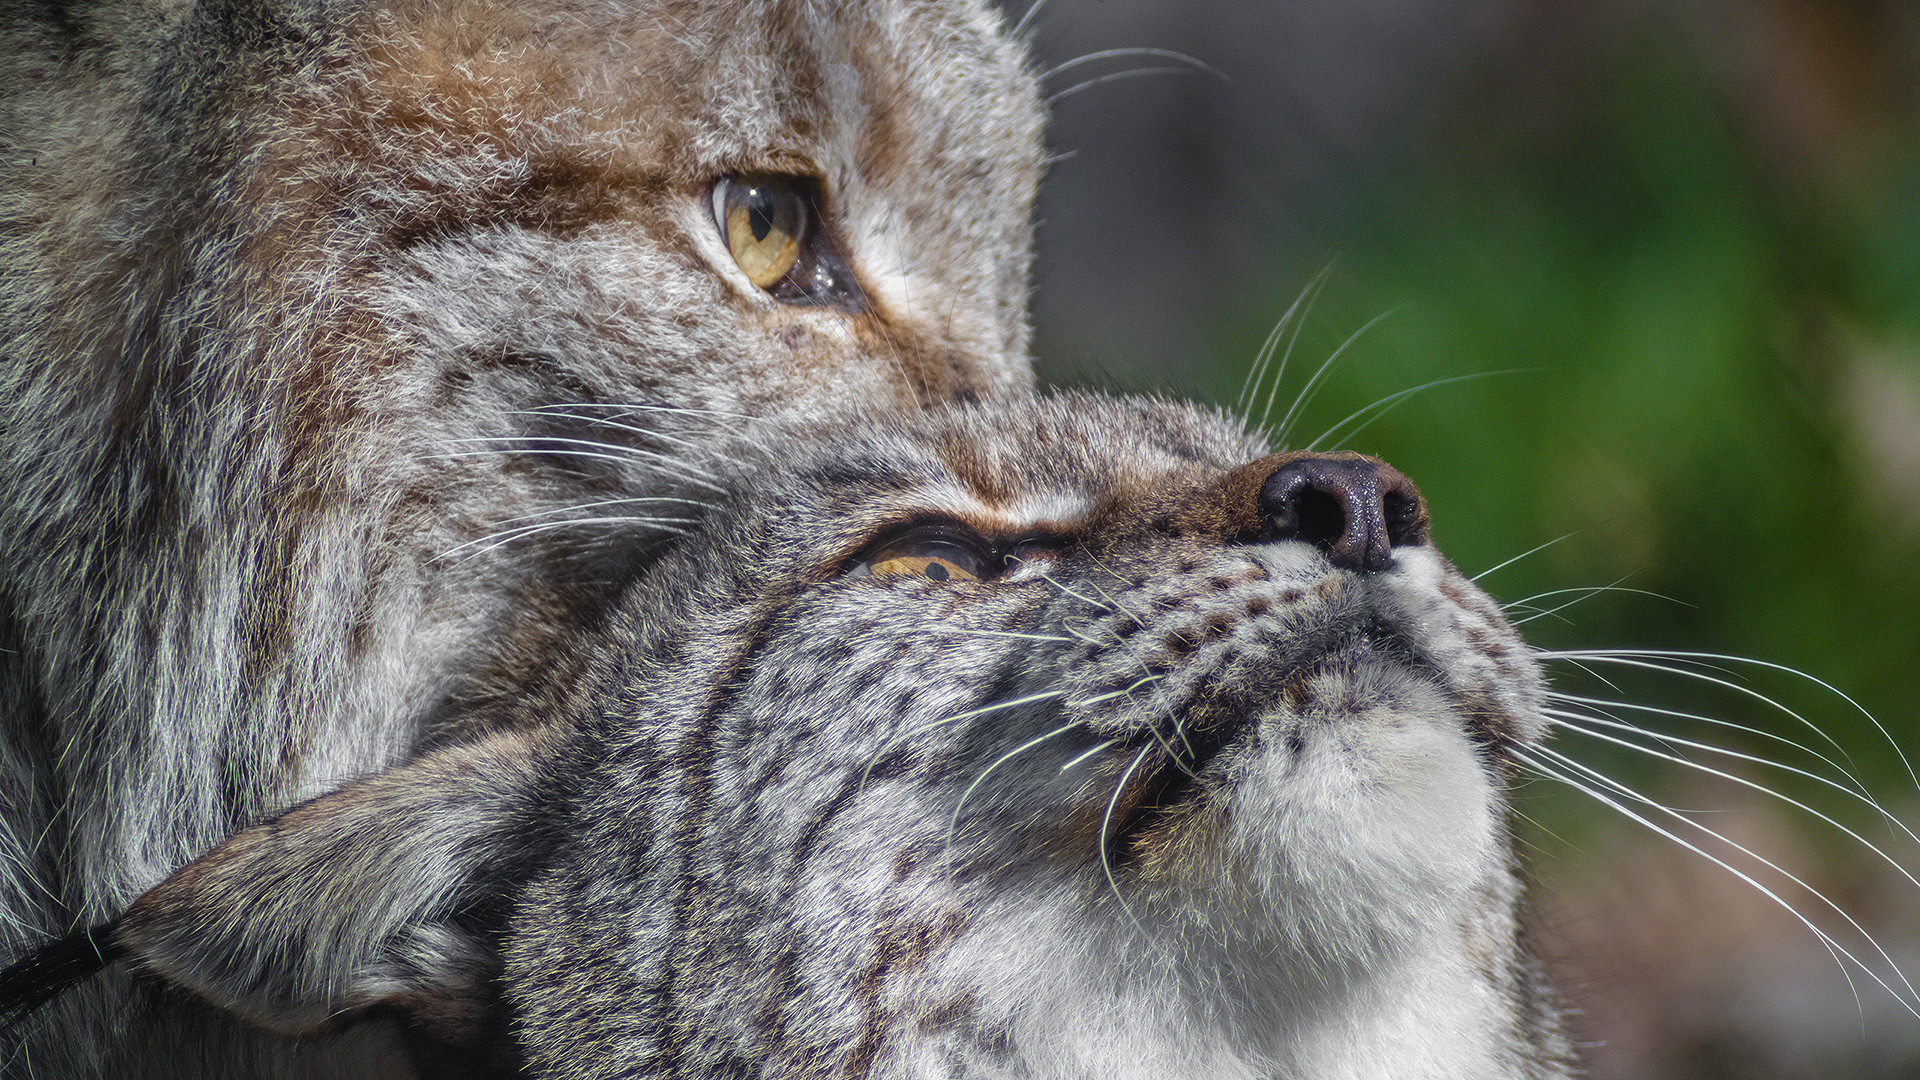 DOPPELLUX - Lynx lynx  *ganzstillhalteundgenieße*